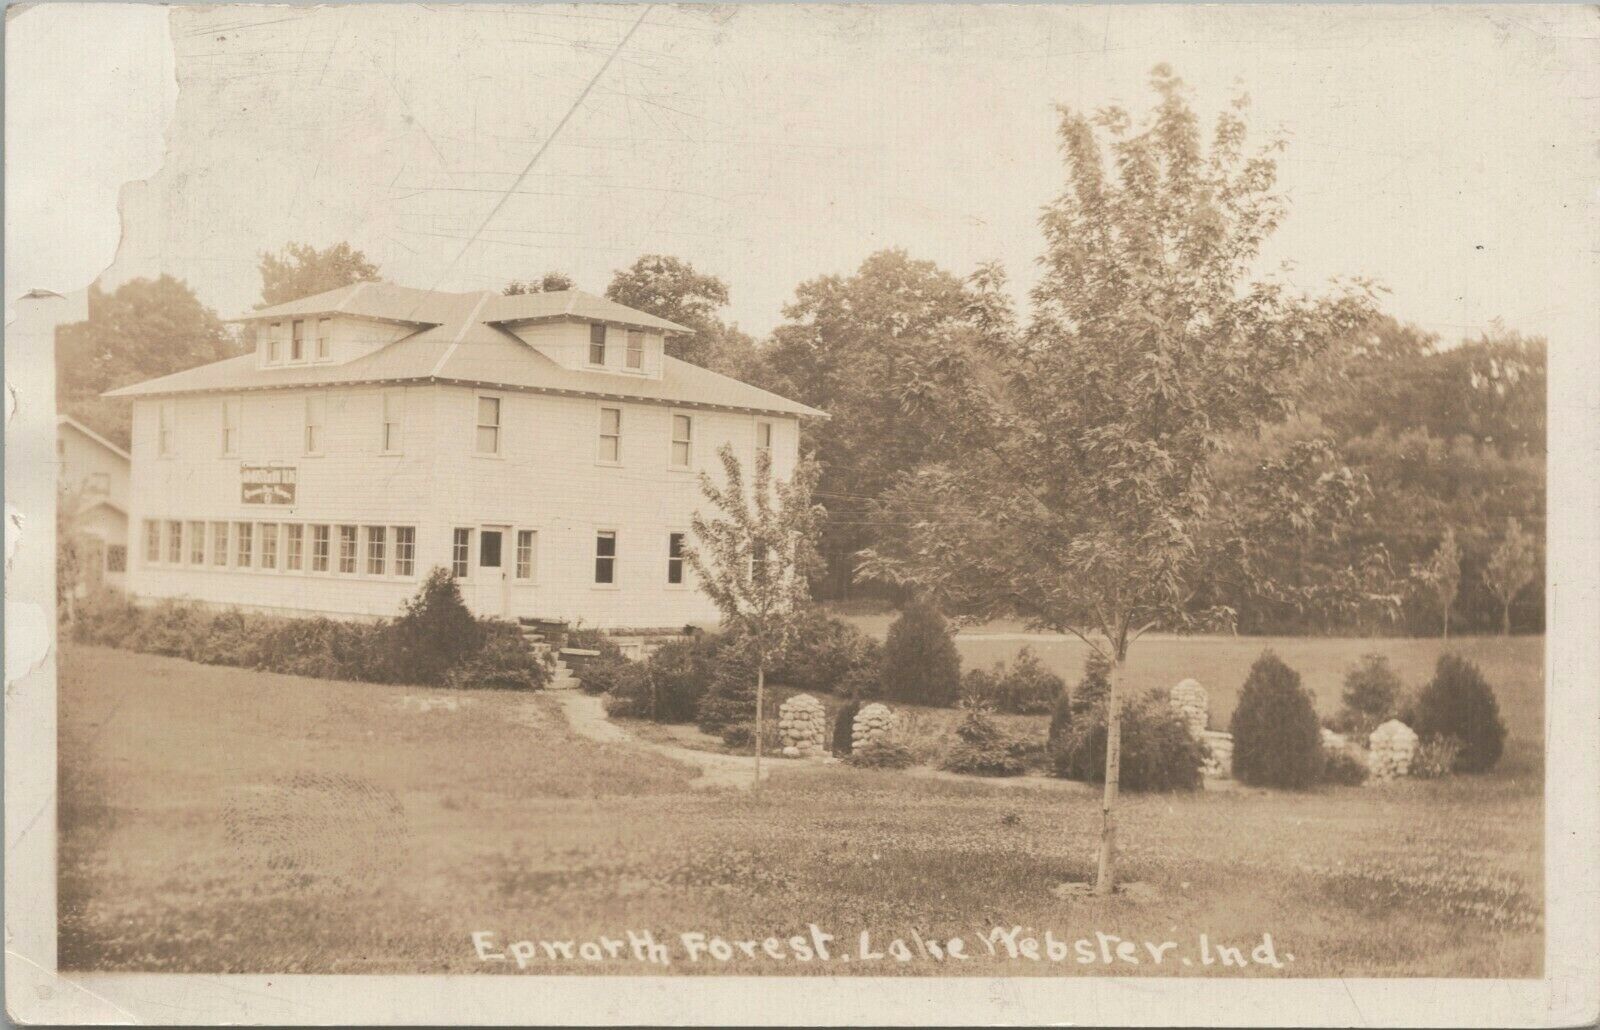 Epworth Forrest Administration Building Lake Webster IN 1932 Postcard - Posted